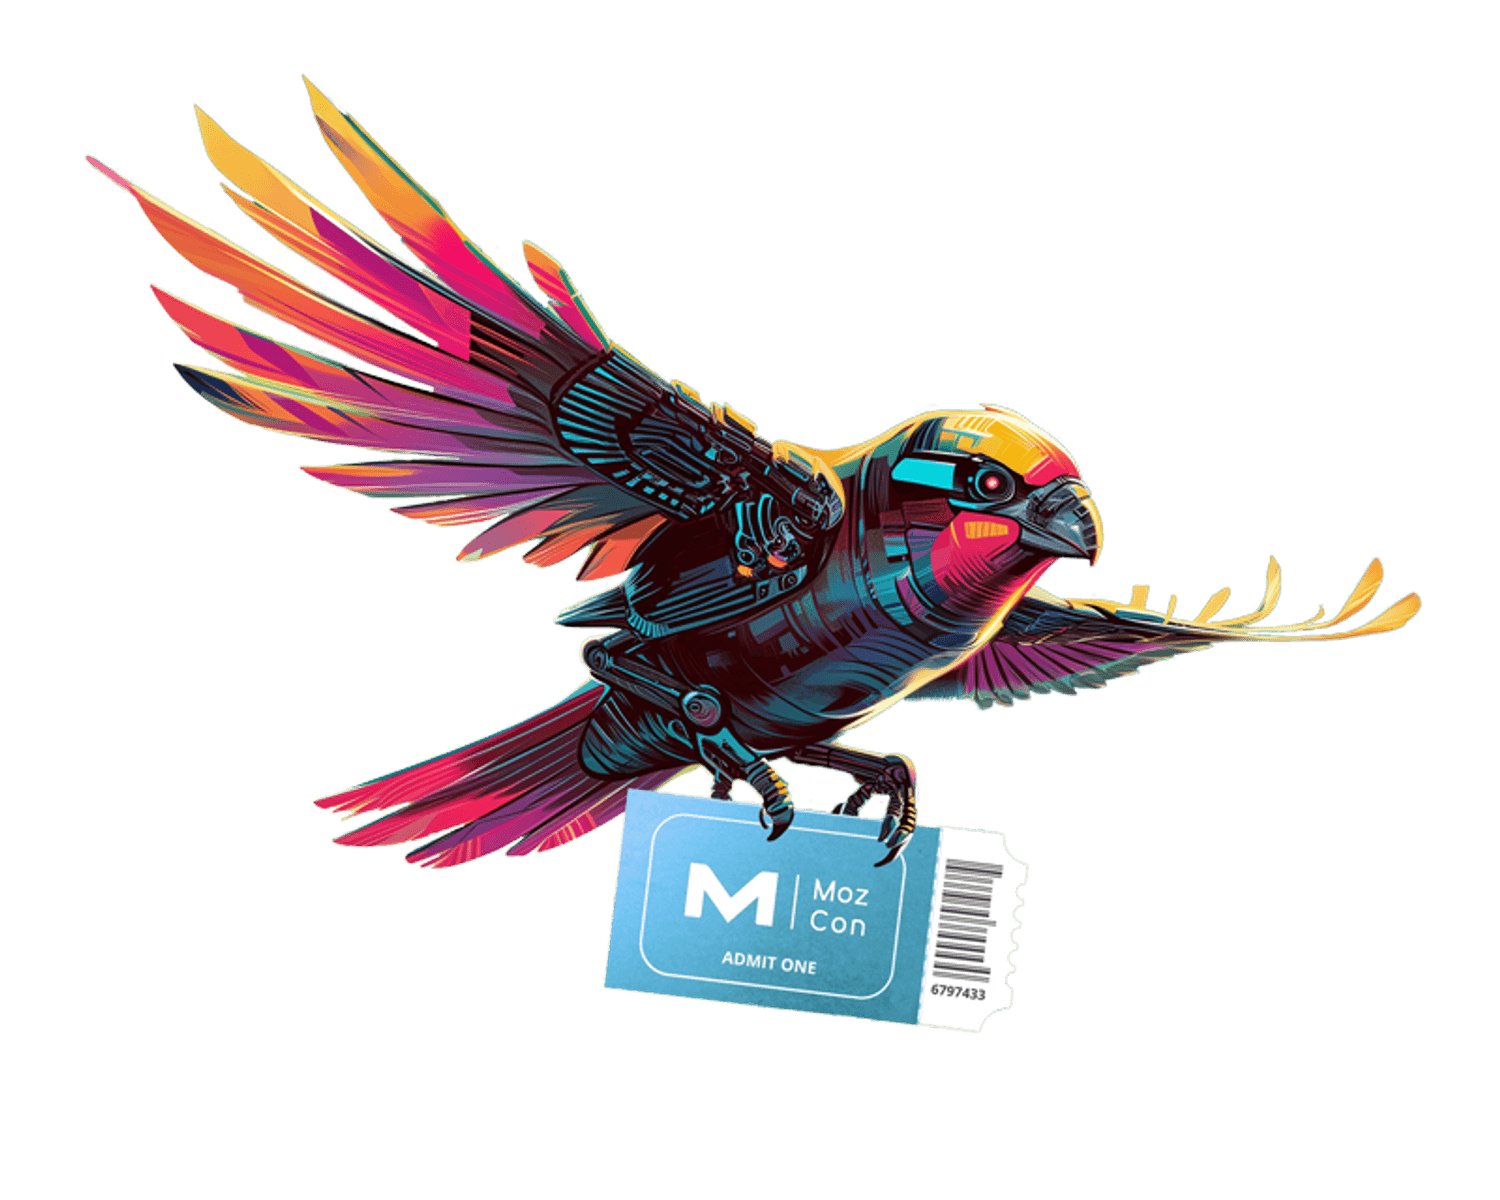 Mozcon robot bird